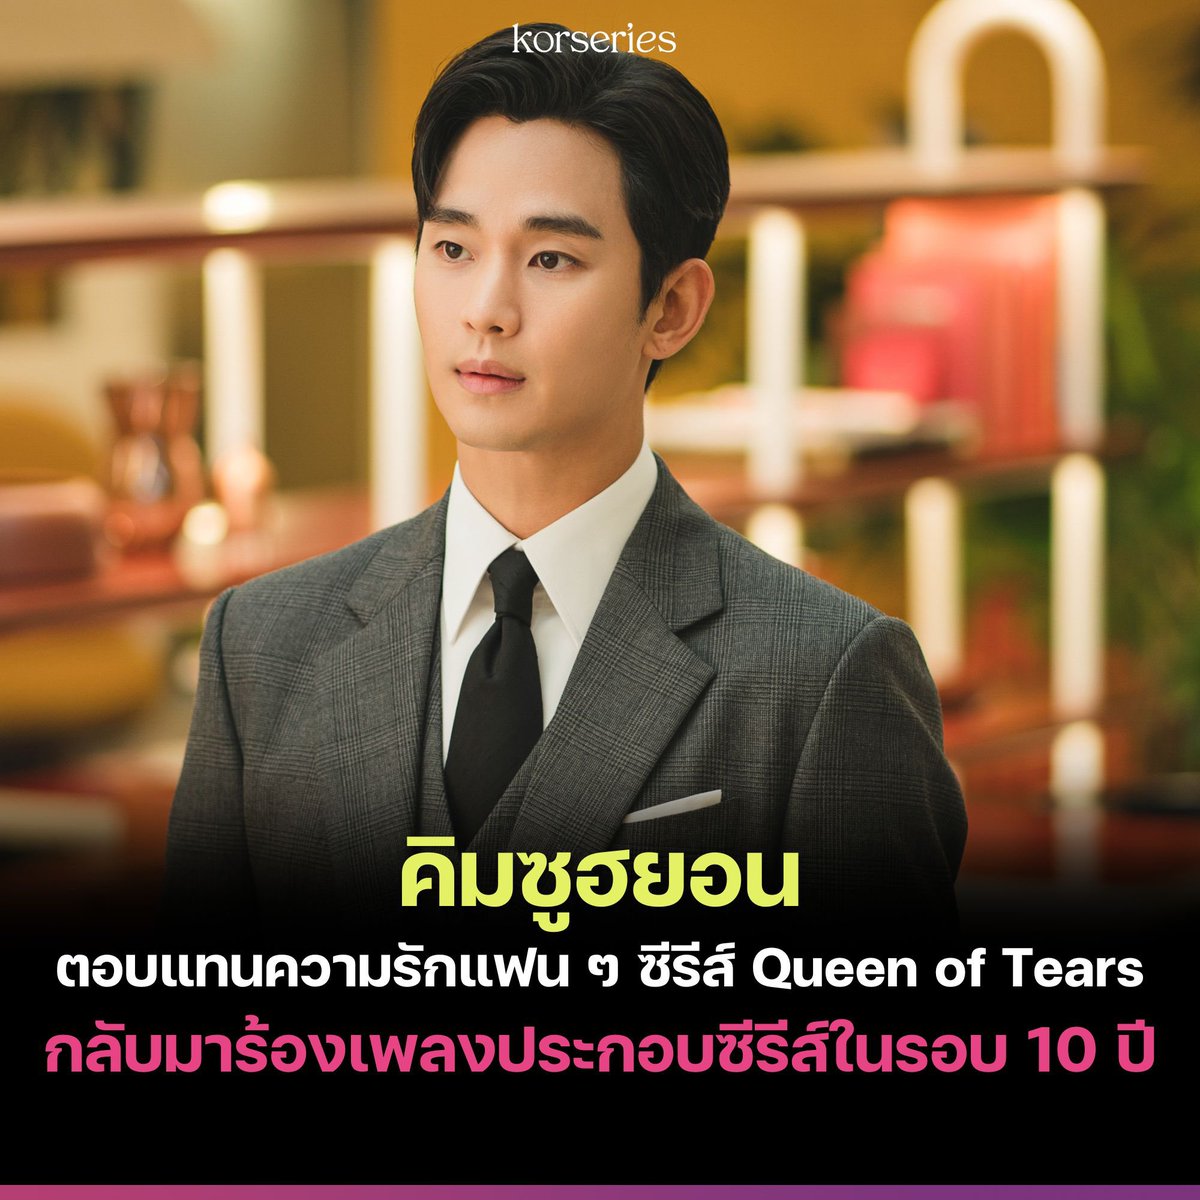 พระเอกของเราร้องเอง! คิมซูฮยอน คอนเฟิร์มเข้าร่วมร้องเพลงประกอบซีรีส์ Queen of Tears ซึ่งนับเป็นการกลับมาร้องเพลงประกอบซีรีส์อีกครั้ง ในรอบ 10 ปี ของเขา นับตั้งแต่ซีรีส์ My Love From the Star (SBS,2013-2014)🎤🎶 รอฟังกันเลยยย😆💗 อ่านเพิ่มเติมที่เว็บไซต์ Korseries >>…